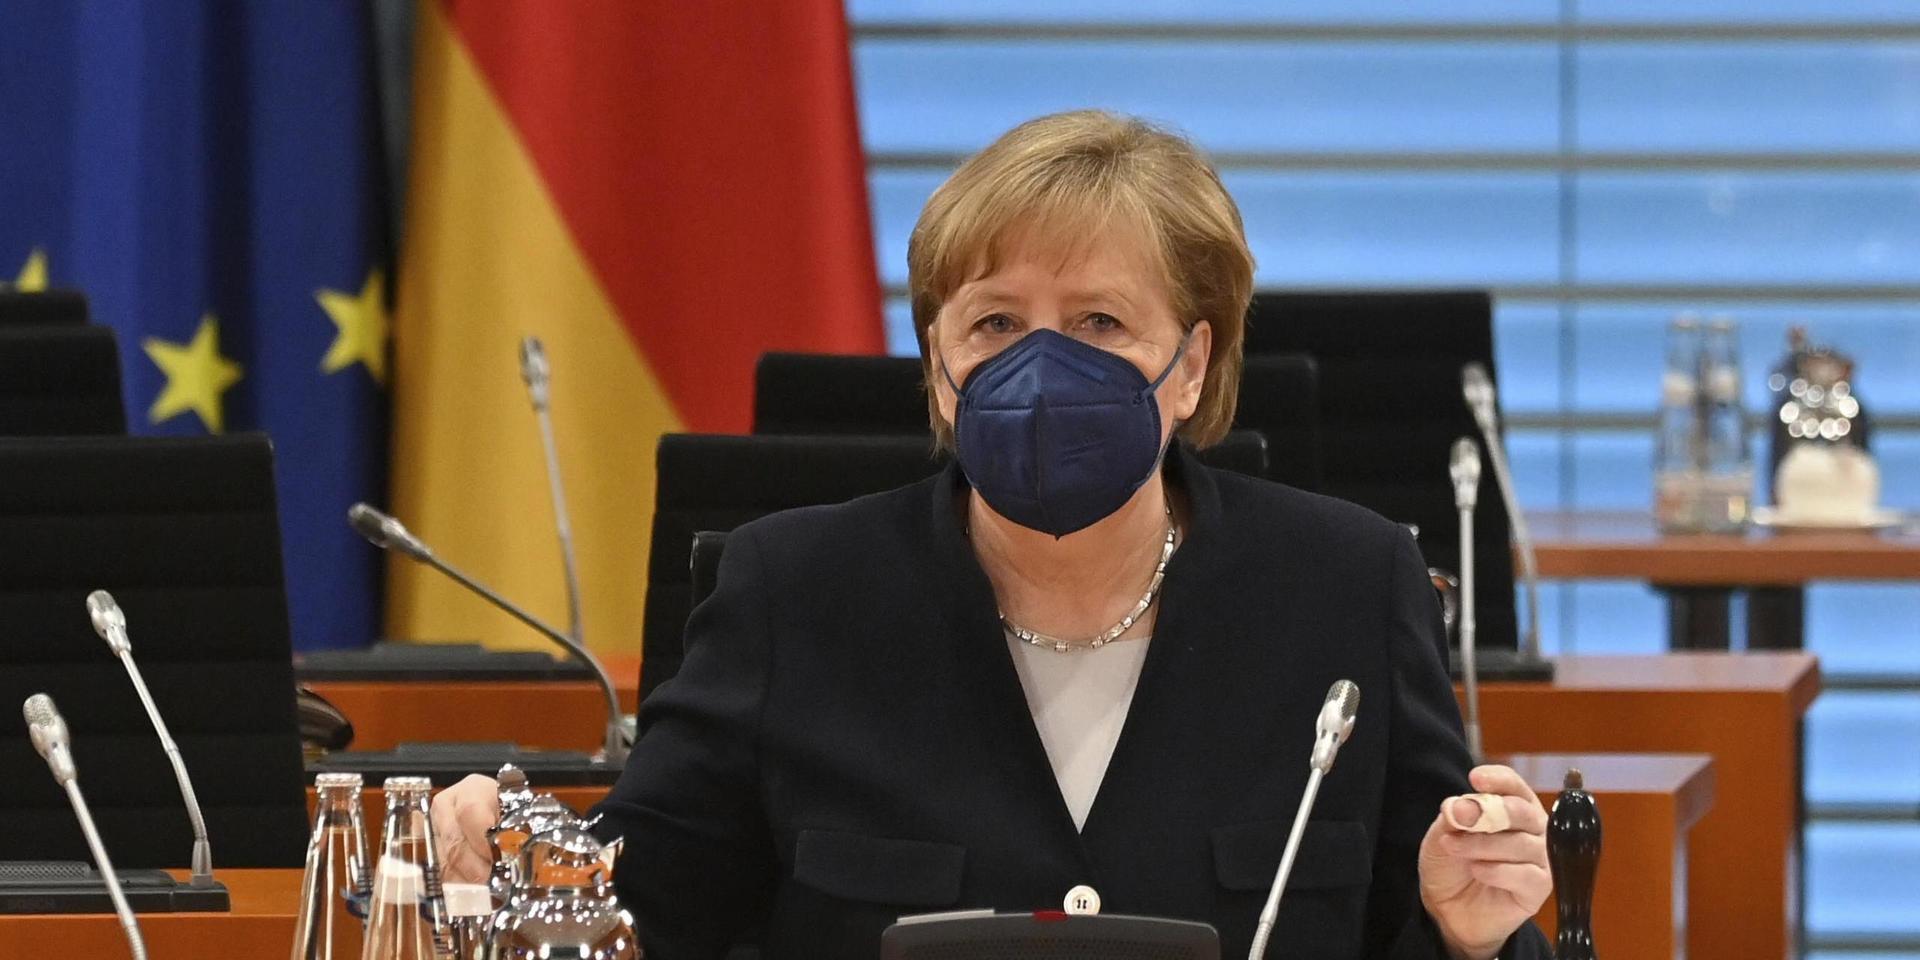 Tysklands förbundskansler Angela Merkel vill knyta tätare handelsband mellan EU och USA.